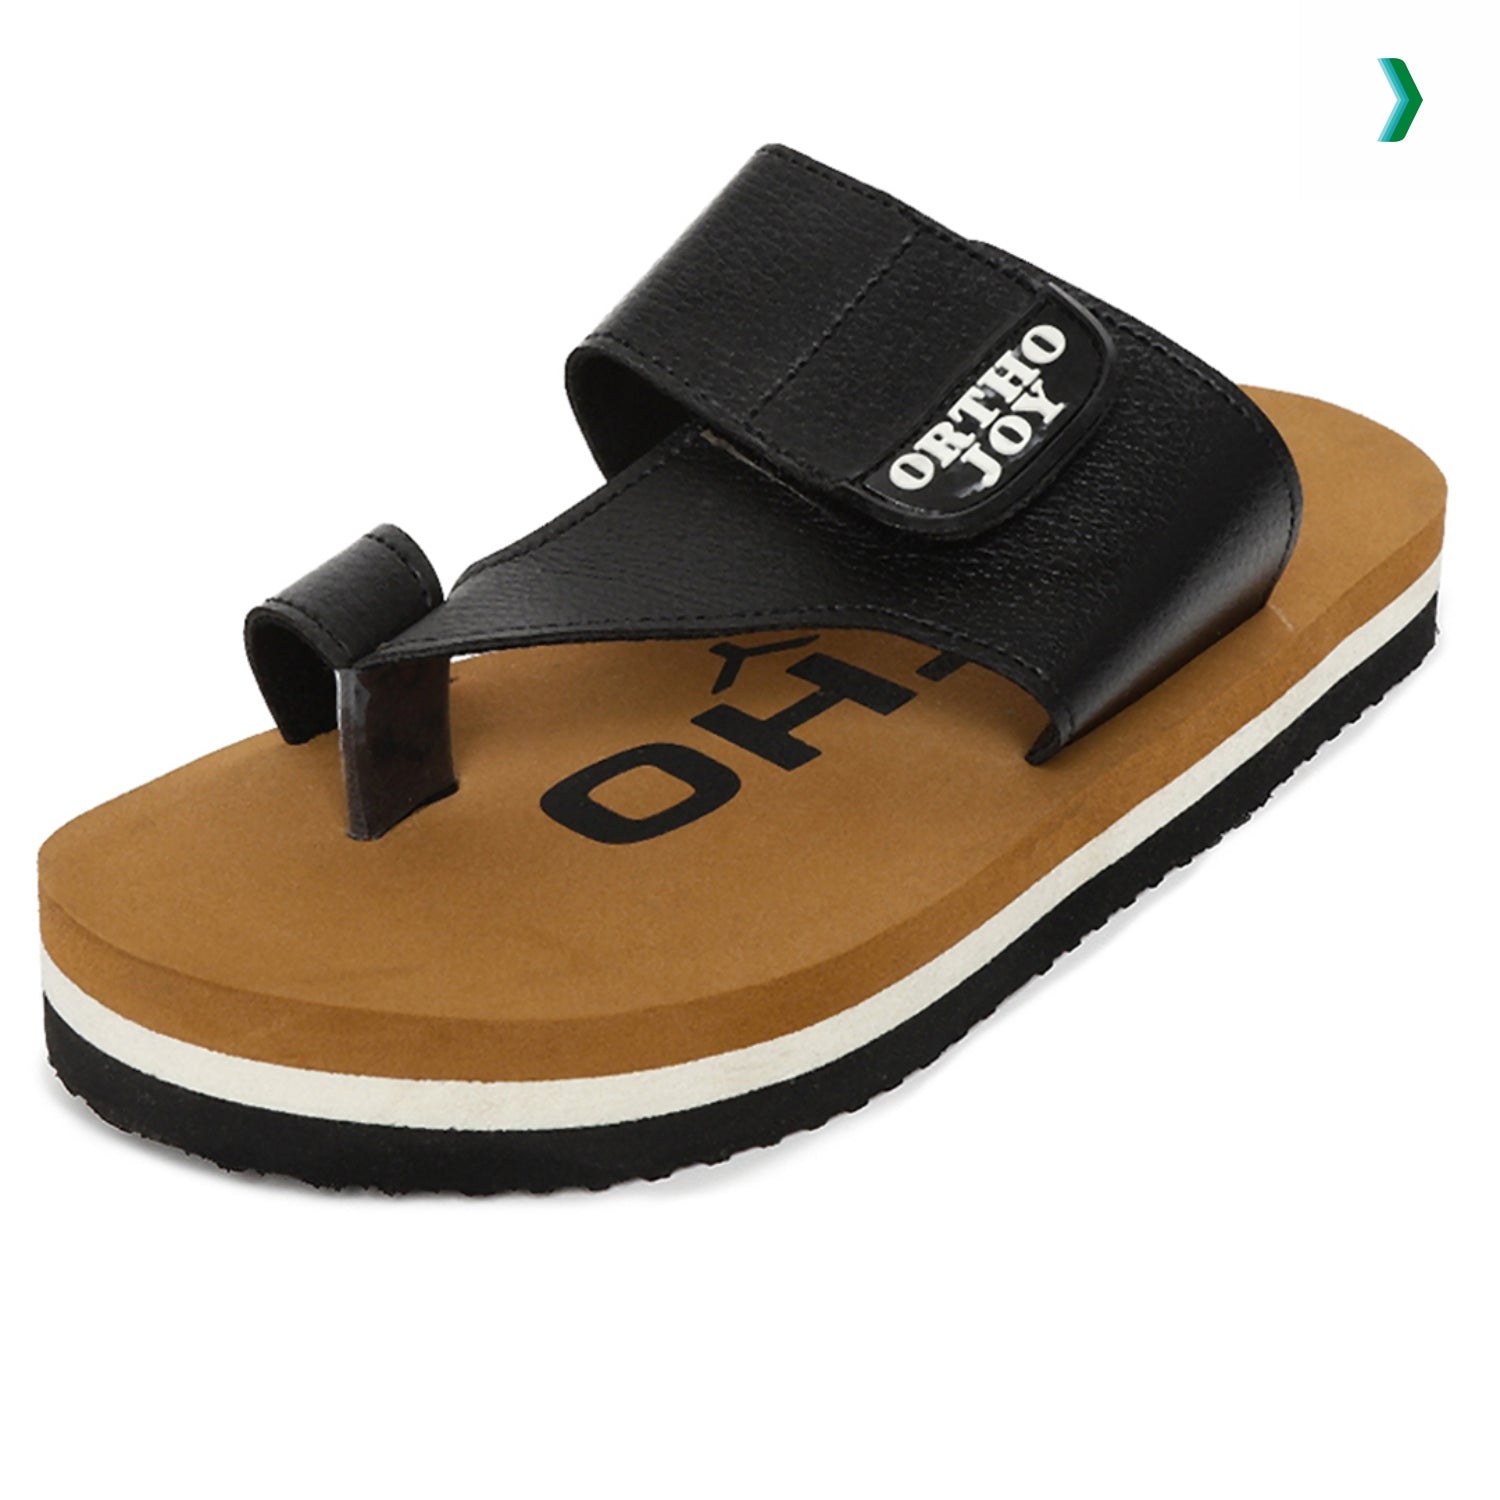 ortho slippers, ortho chappal